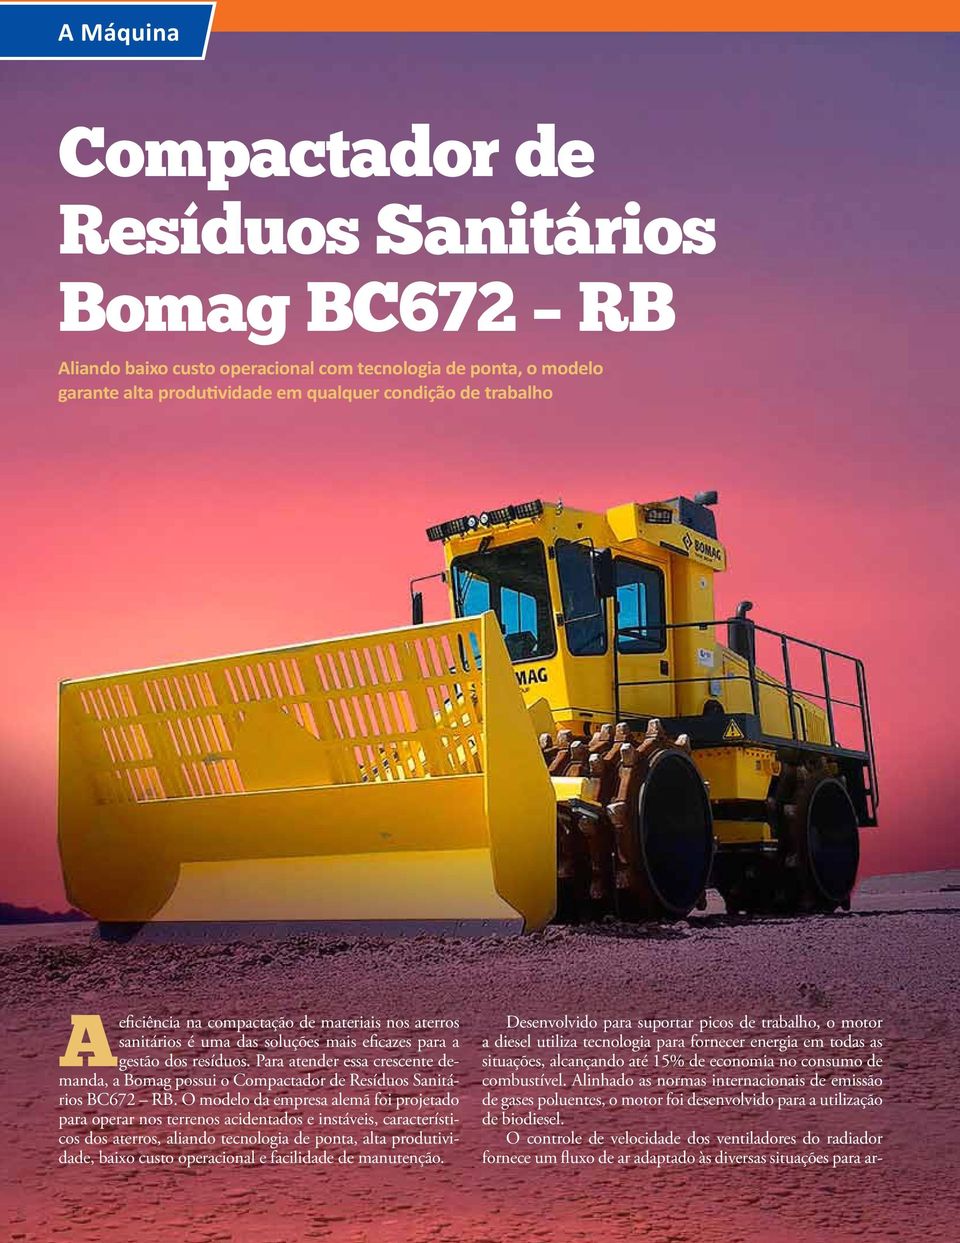 Para atender essa crescente demanda, a Bomag possui o Compactador de Resíduos Sanitários BC672 RB.